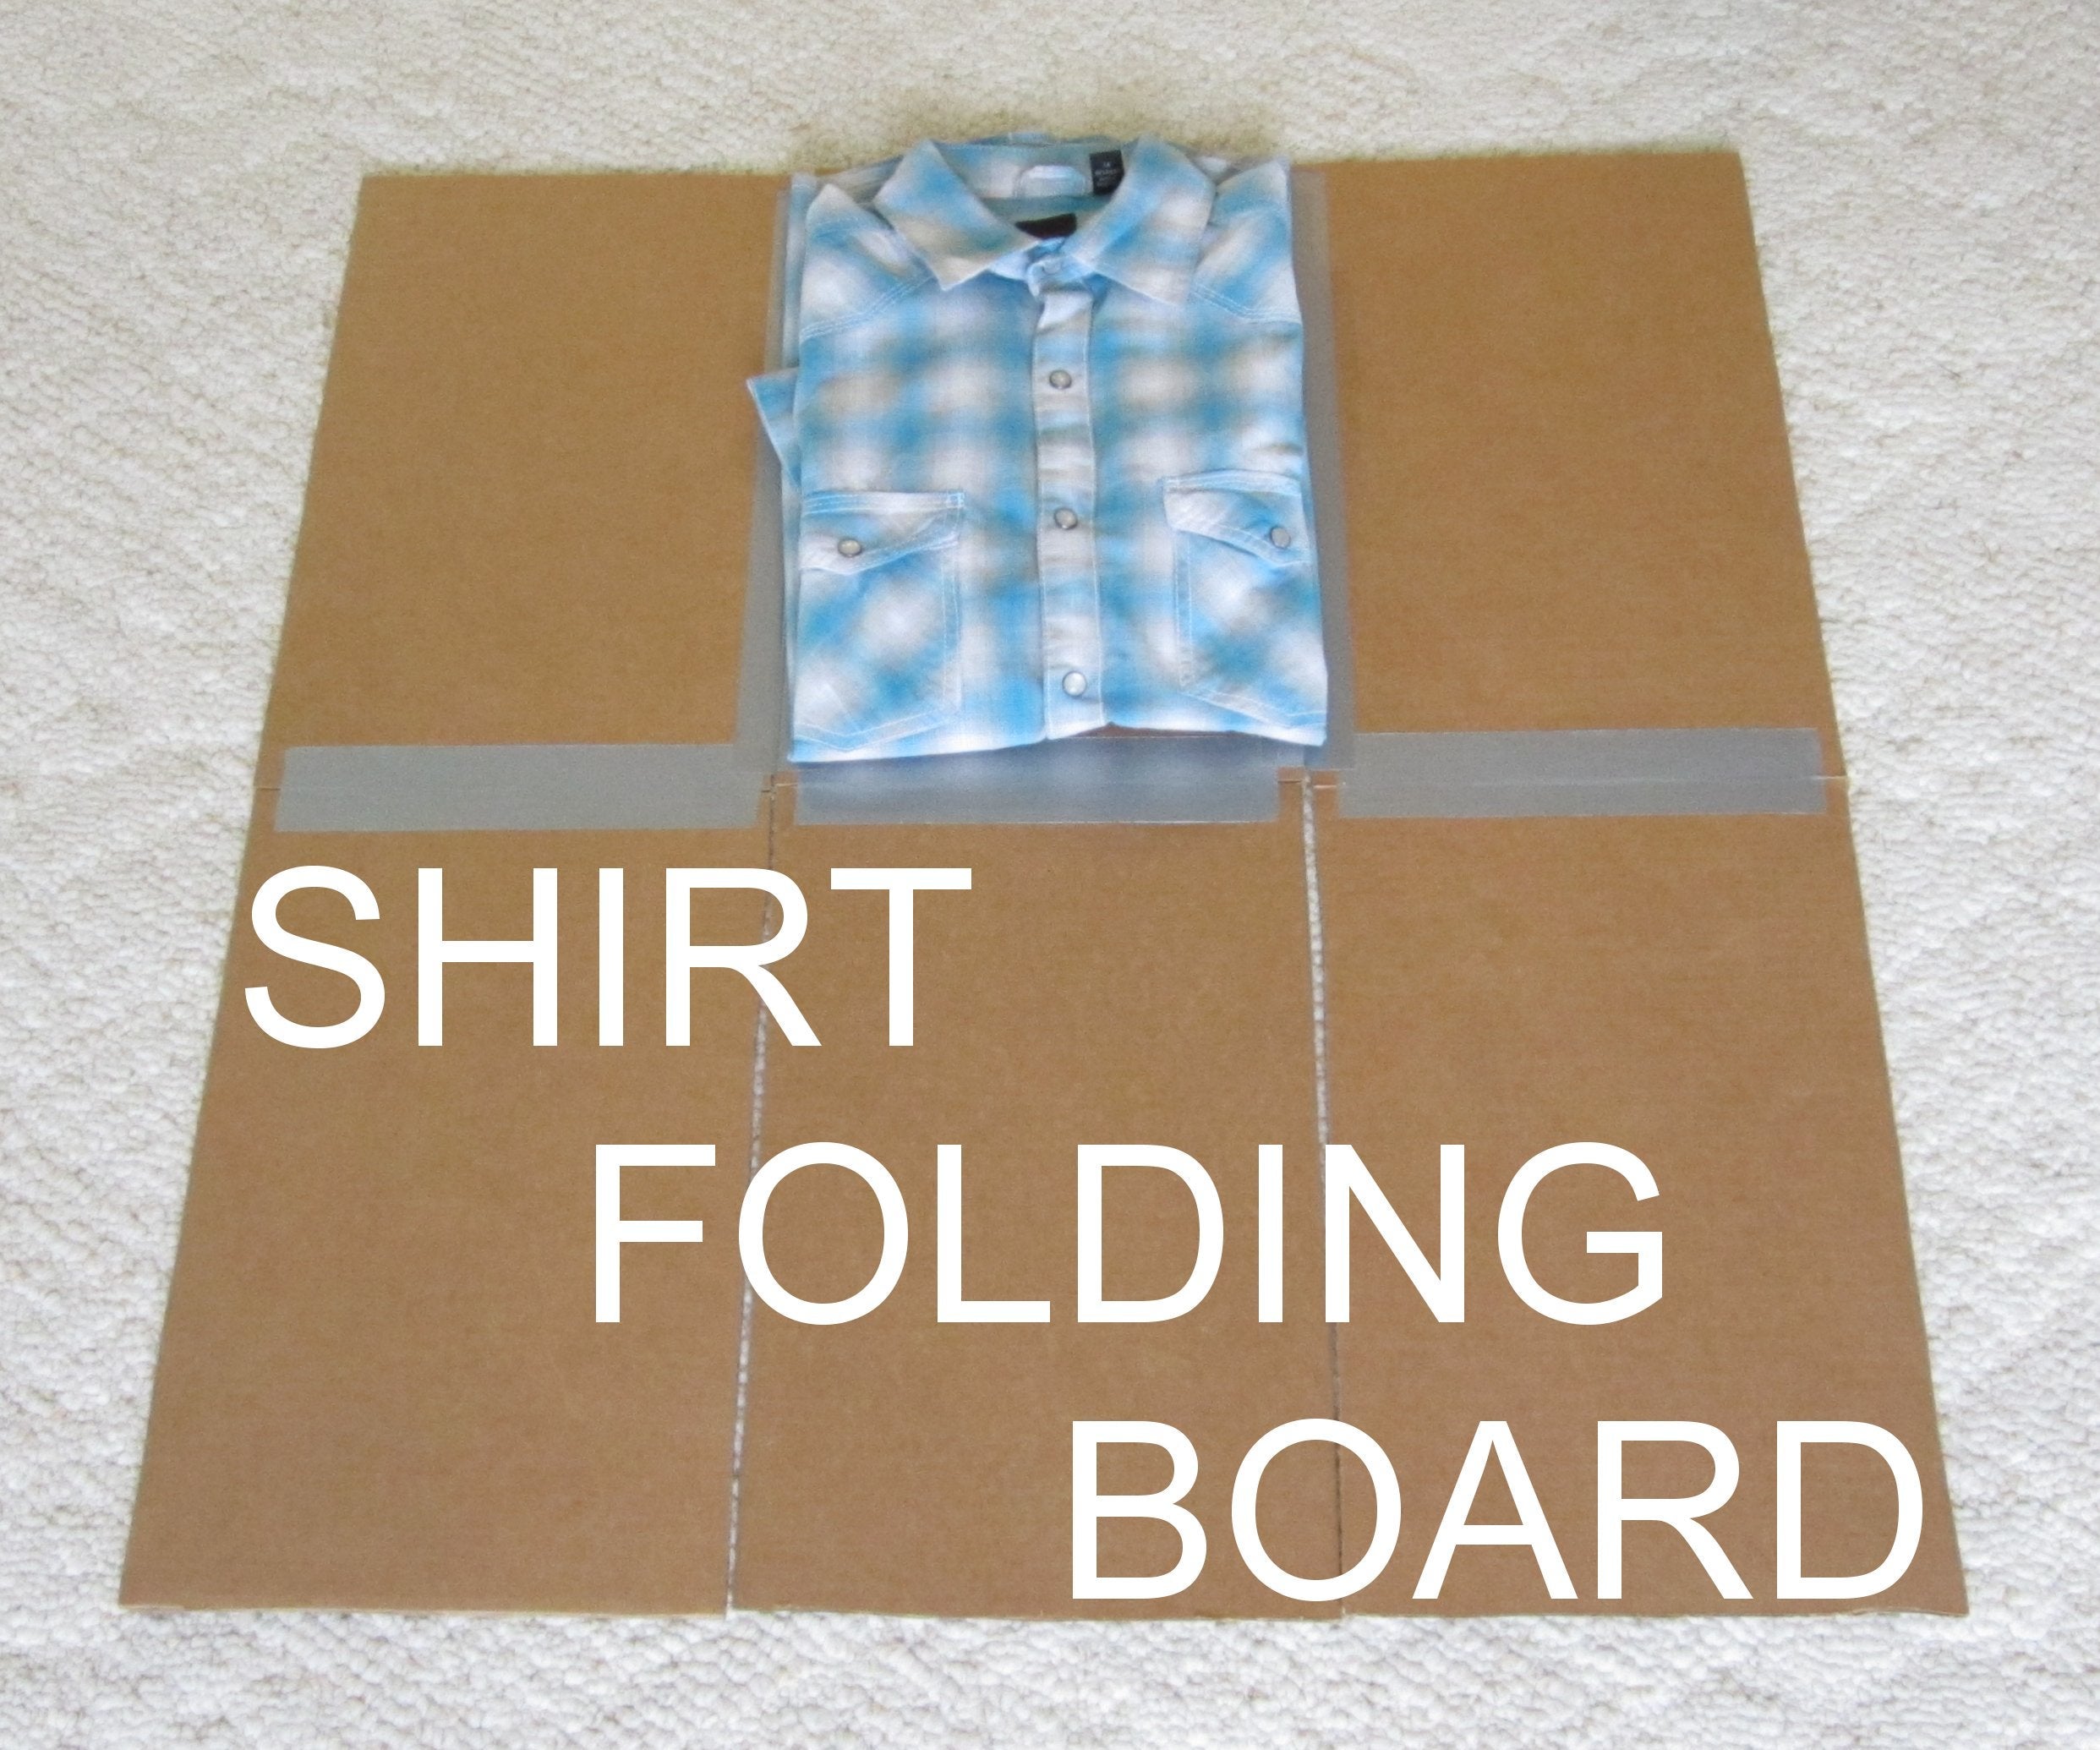 How To Make Shirt Folder?